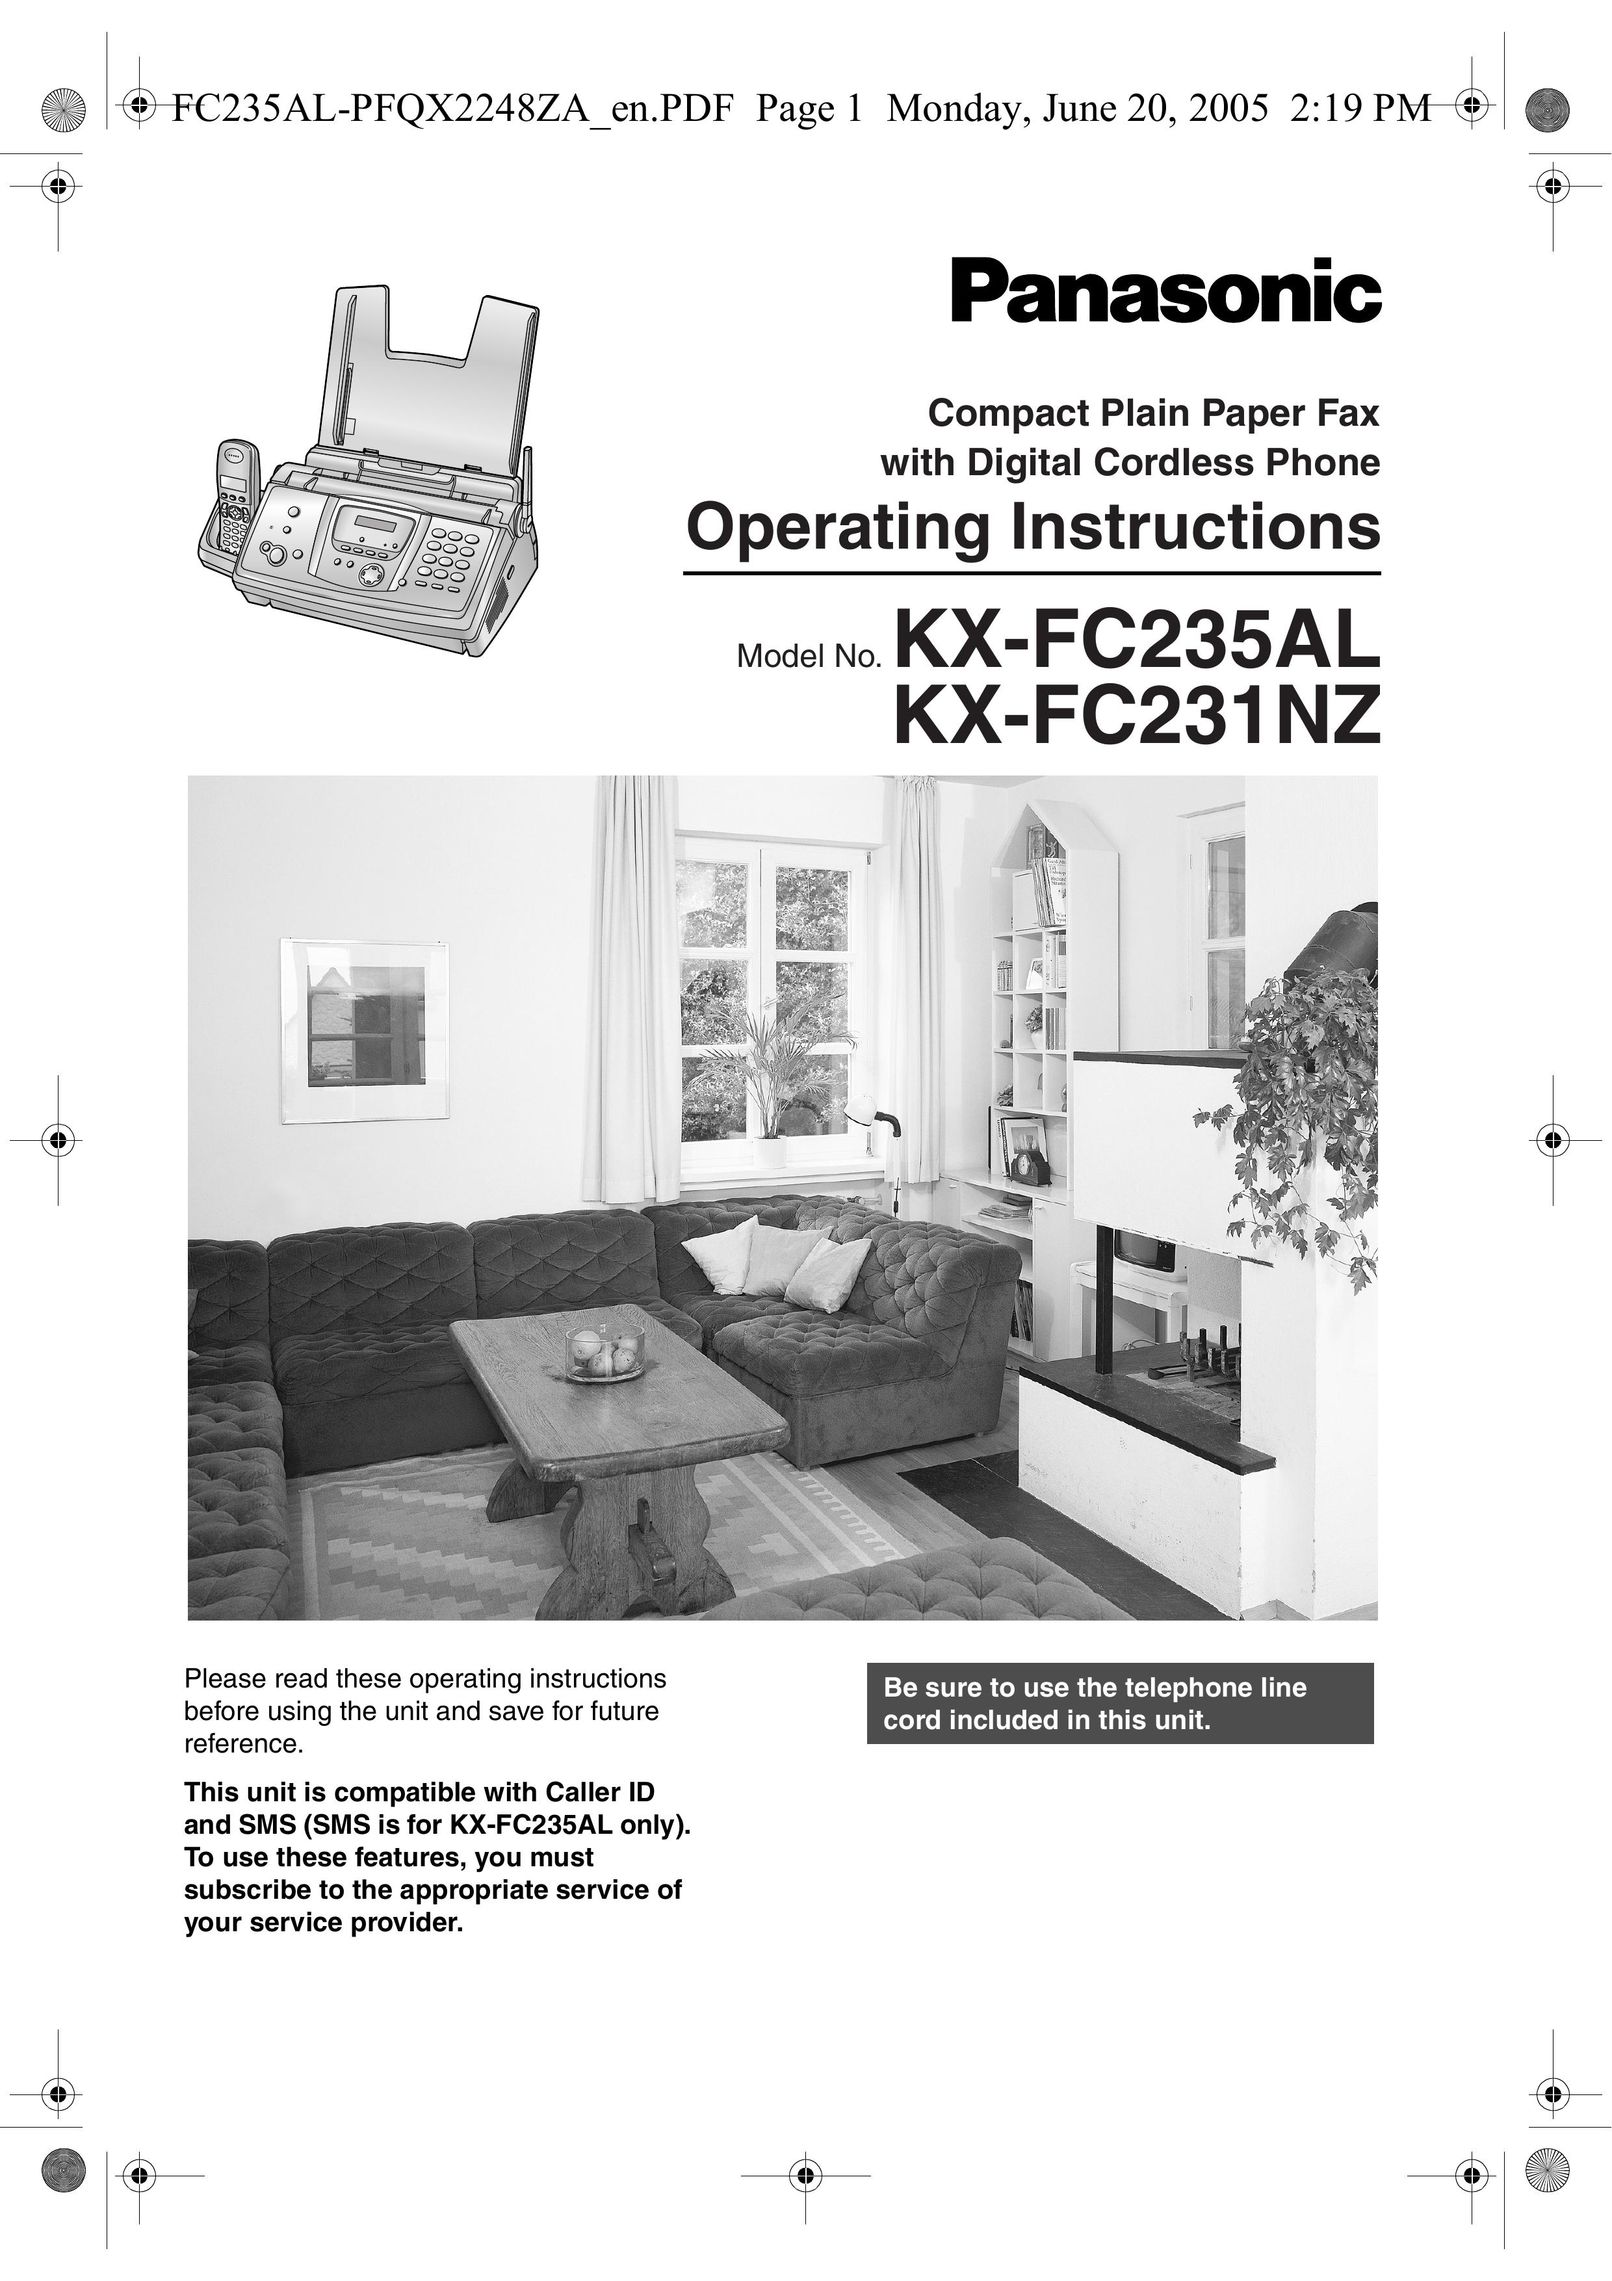 Panasonic KX-FC231NZ Fax Machine User Manual